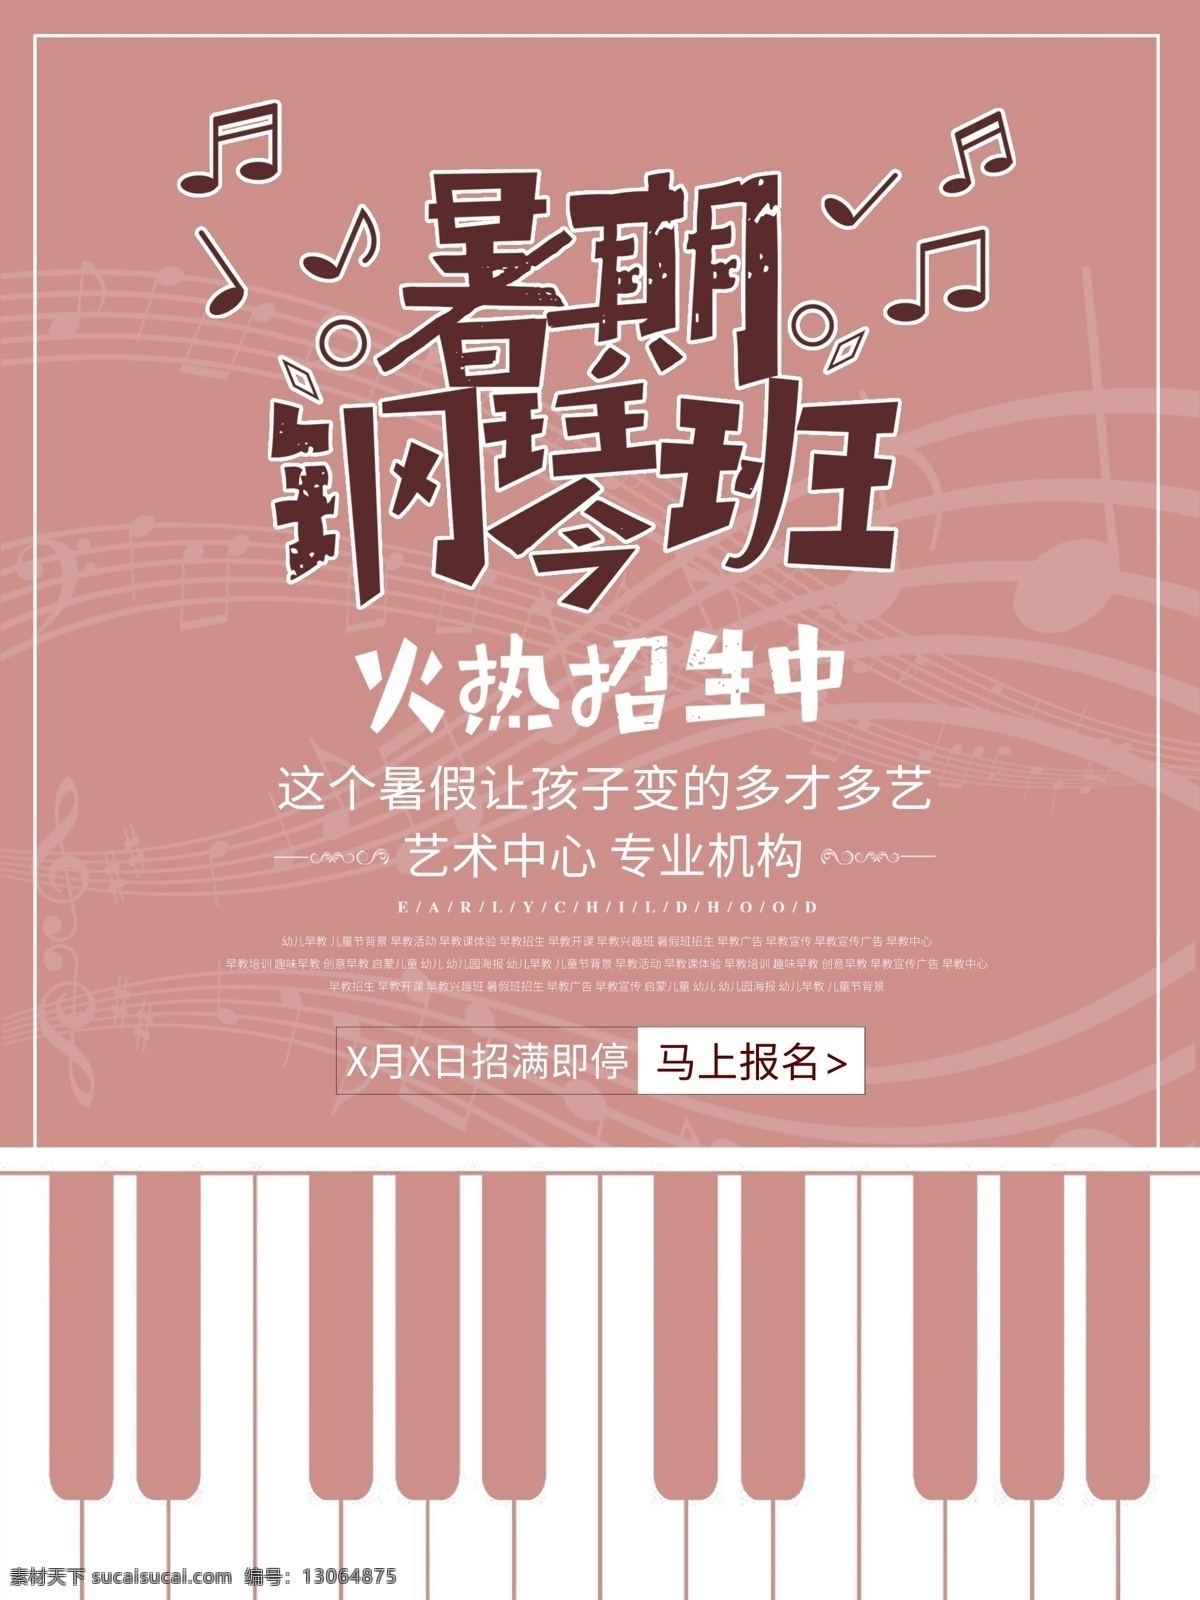 扁平化 音乐 艺术中心 钢琴 班 海报 火热 暑假 招生